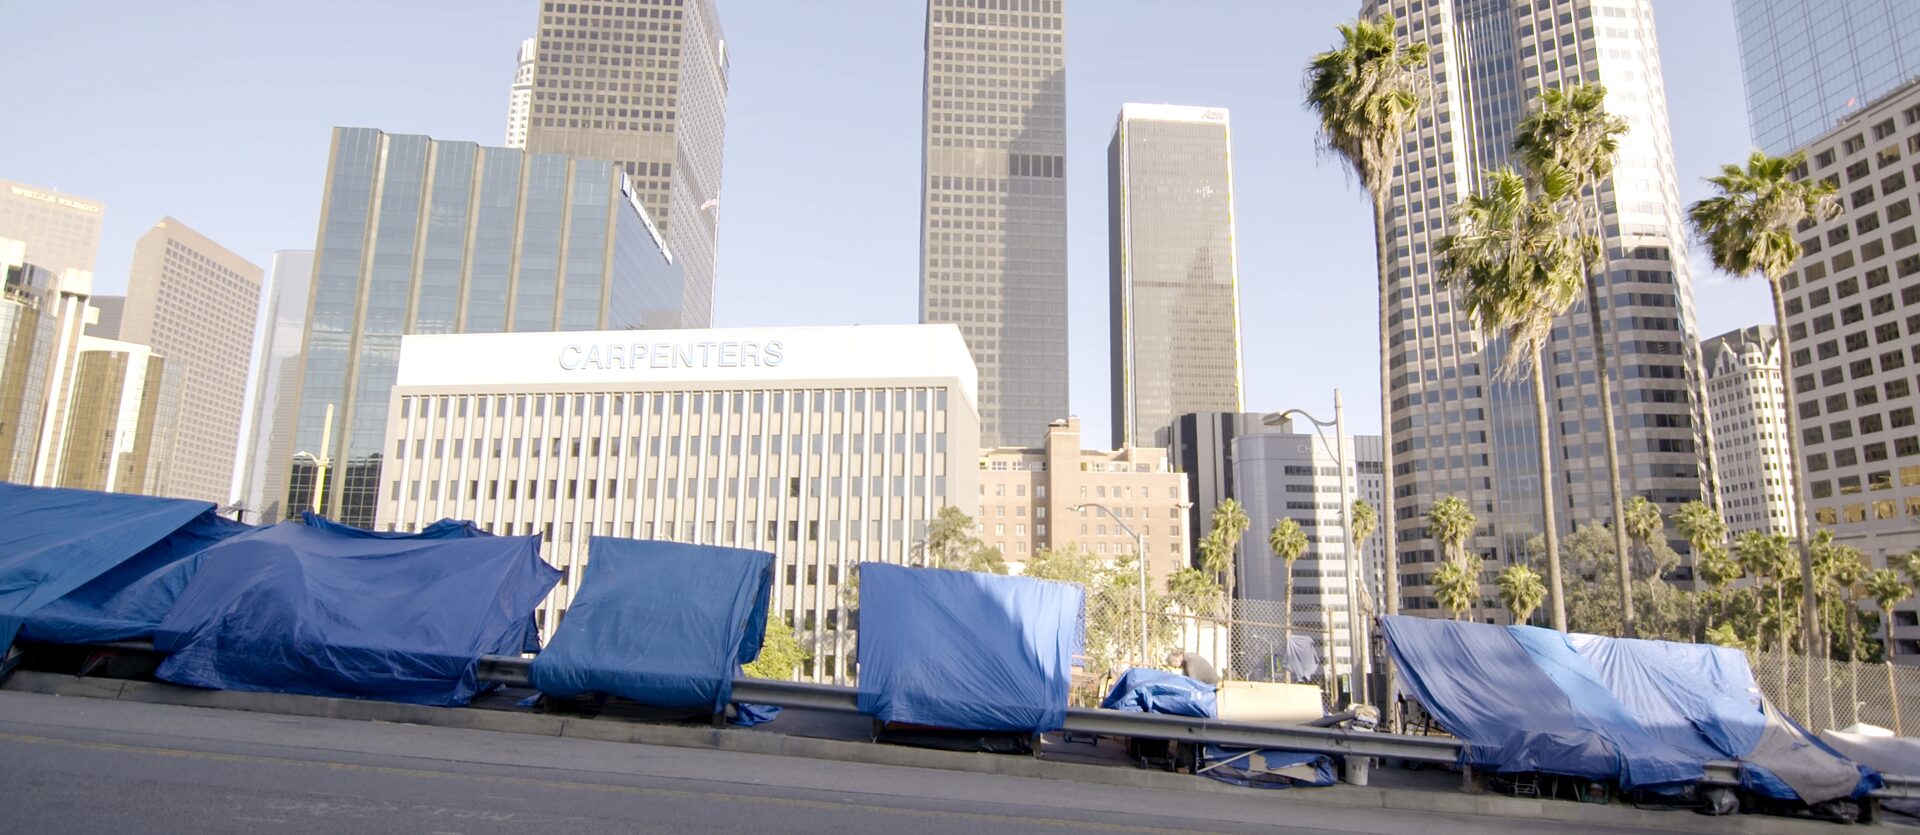 Obdachlos in den USA - Wenn das Auto zum Zuhause wird